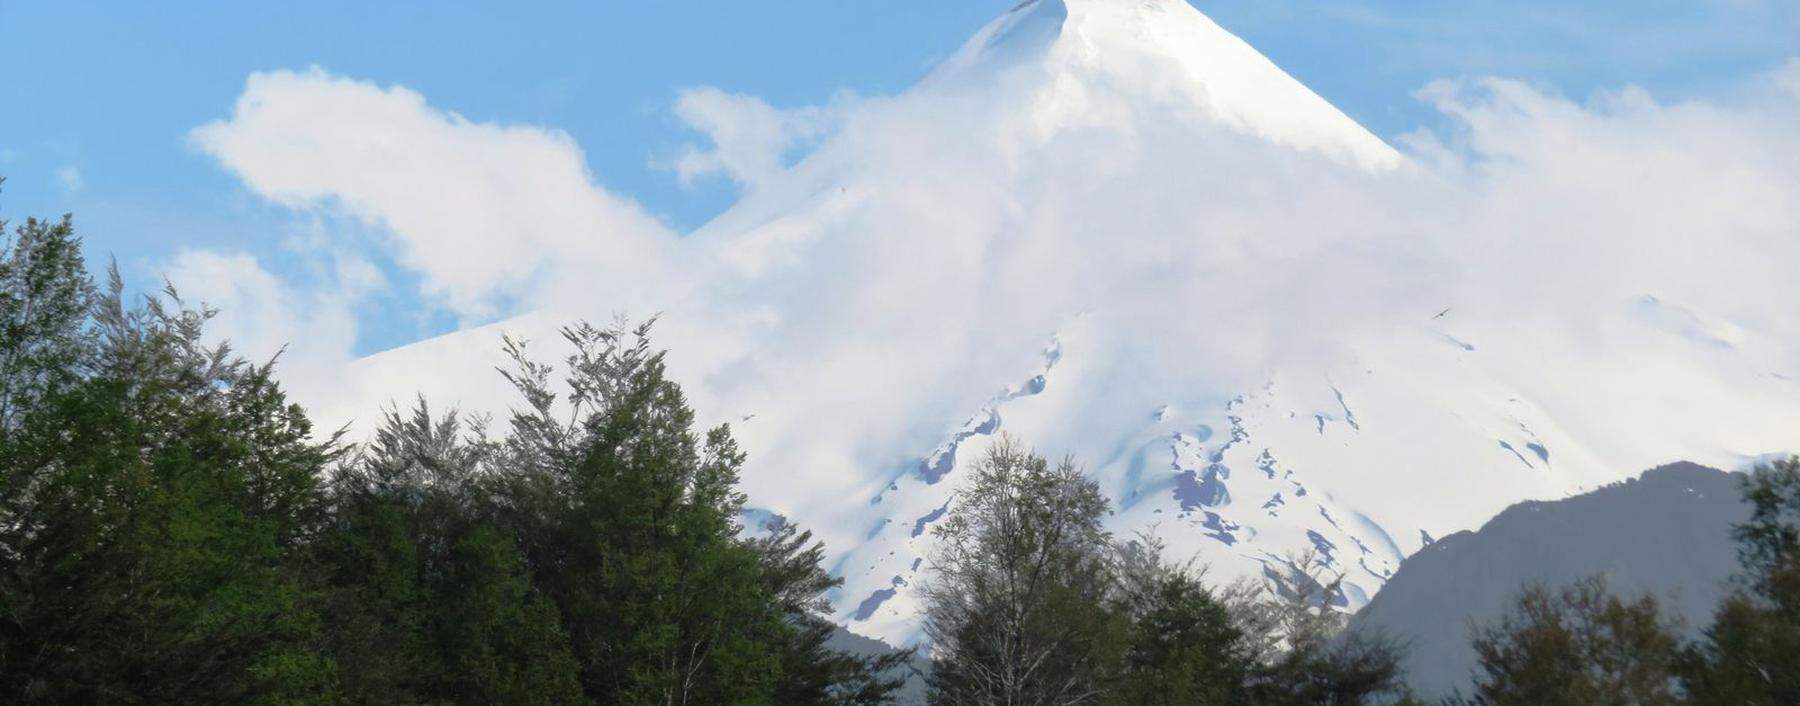 Der Volcán Lanín ist fast so hoch wie der Großglockner und mindestens so schön wie der Fuji - ein Blickfang im Nationalpark Villarrica. 